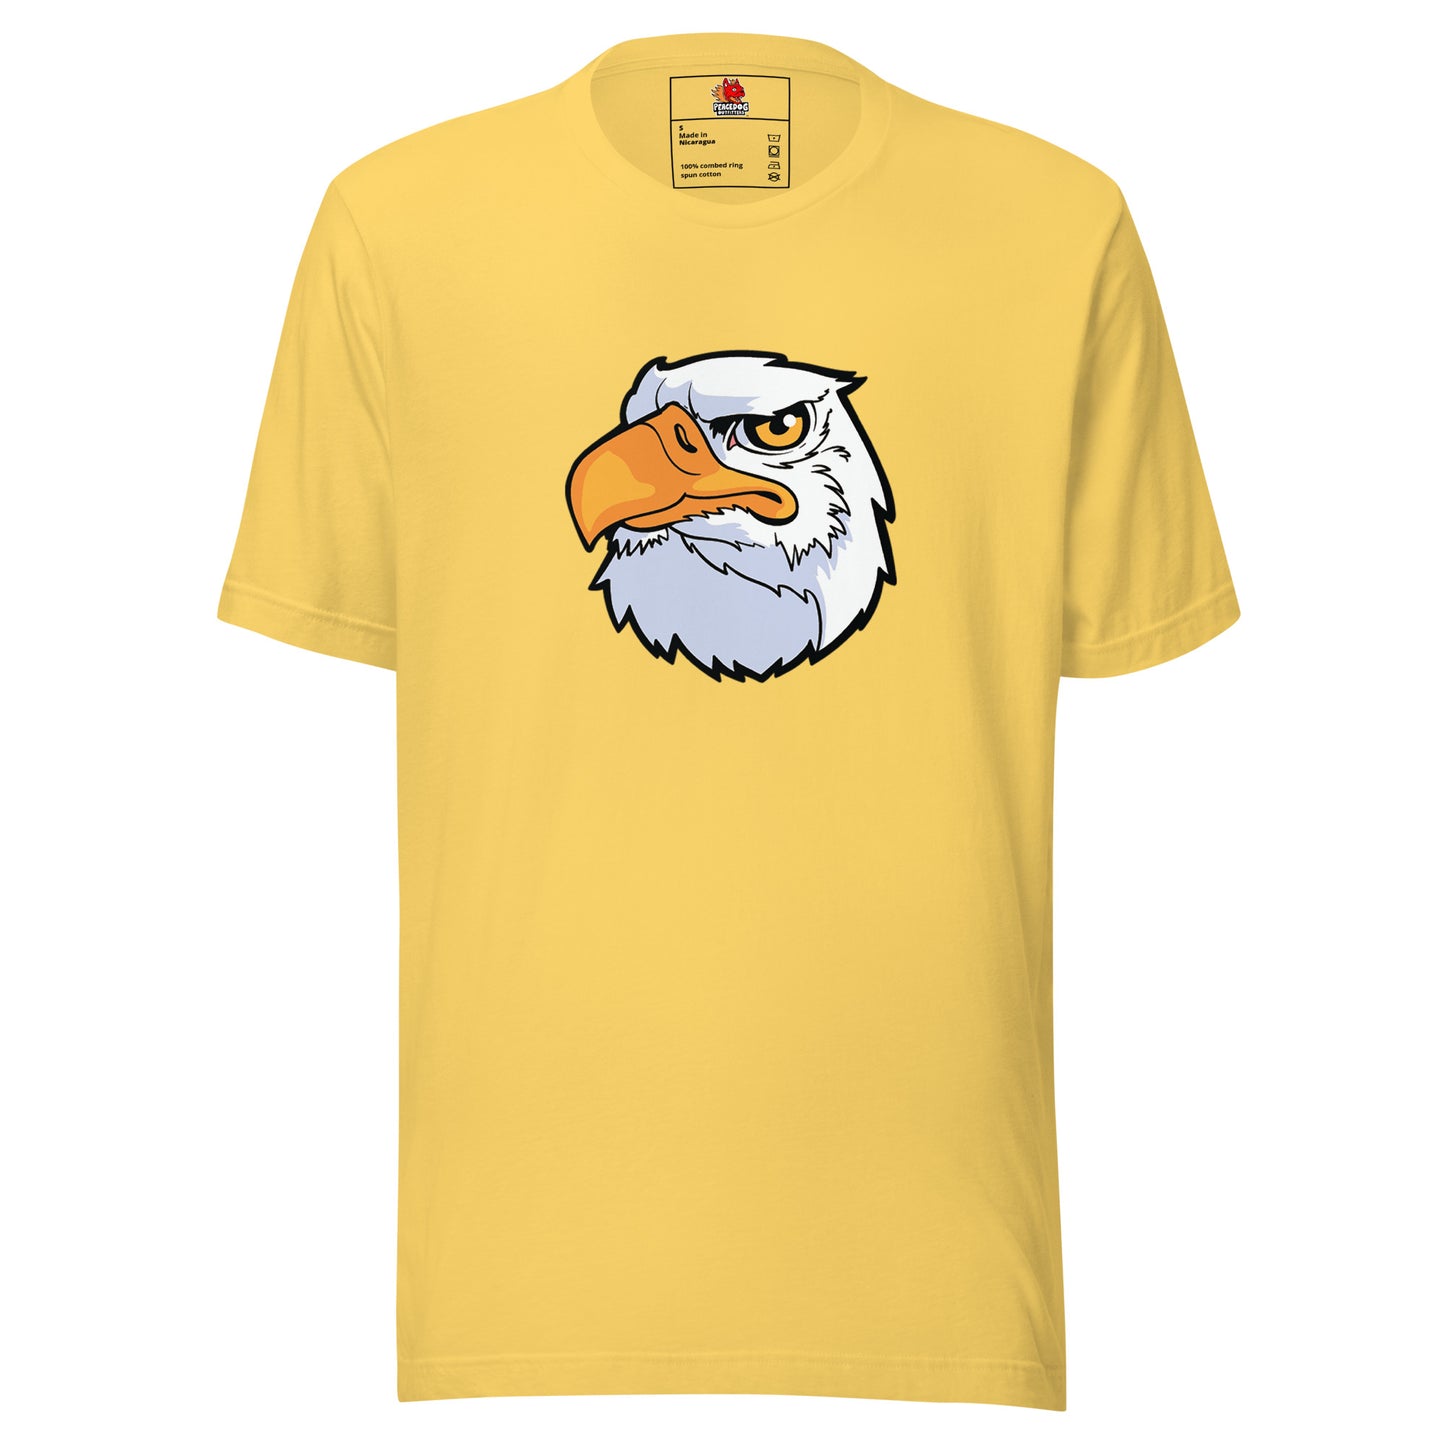 Bald Eagle T-shirt